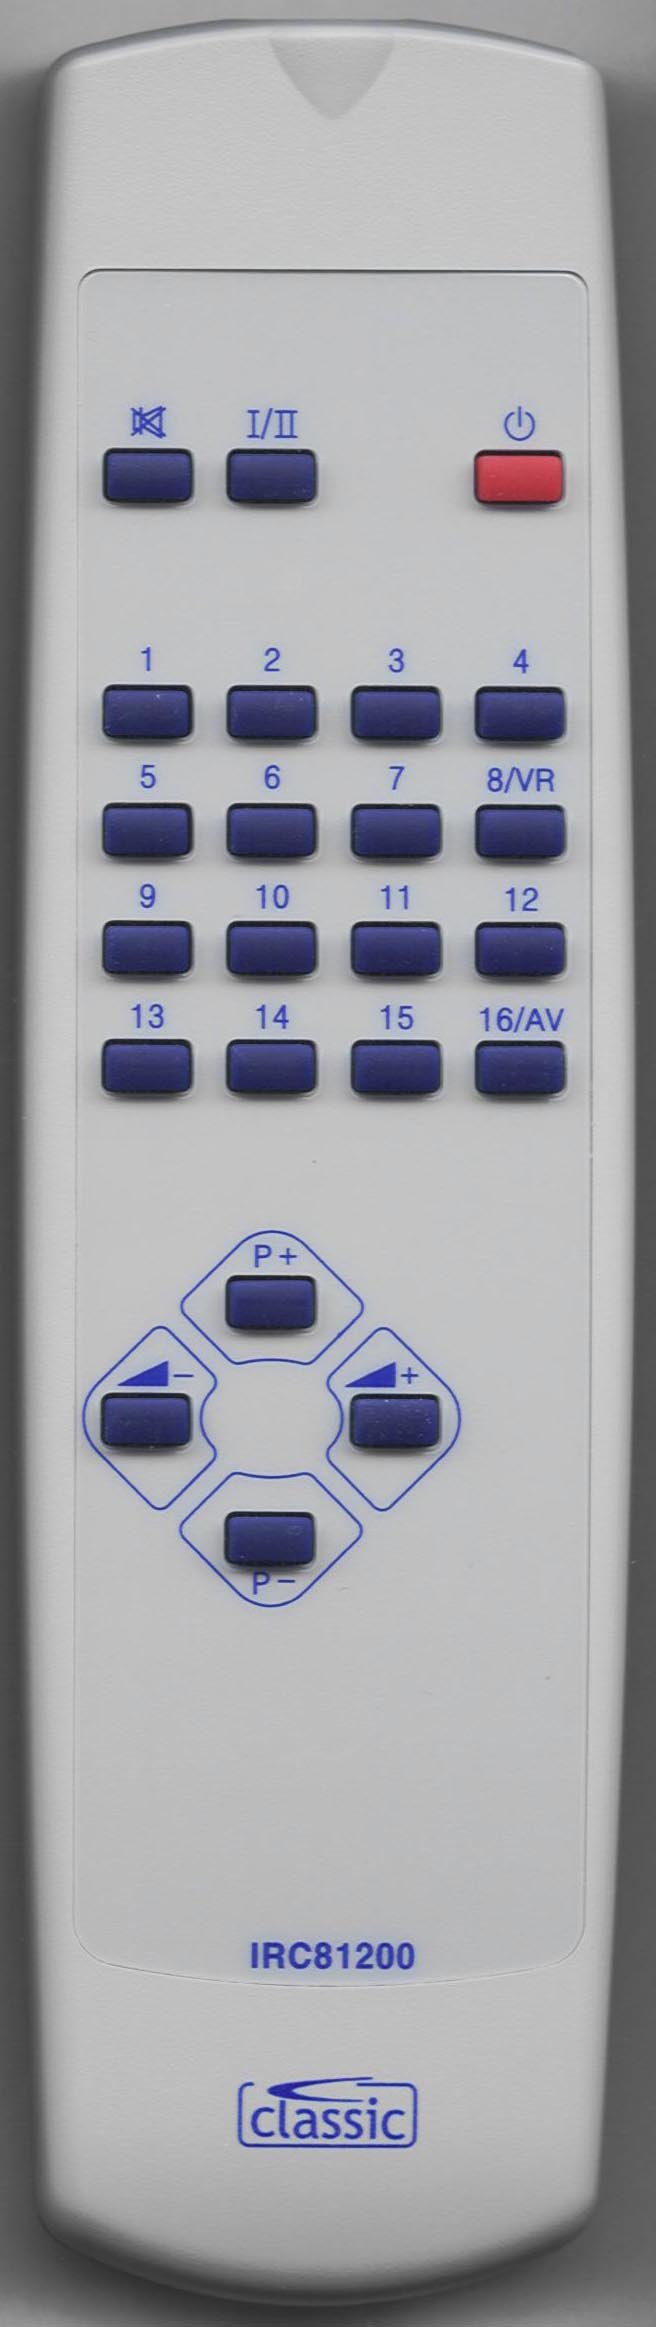 ORION 12T1 Remote Control